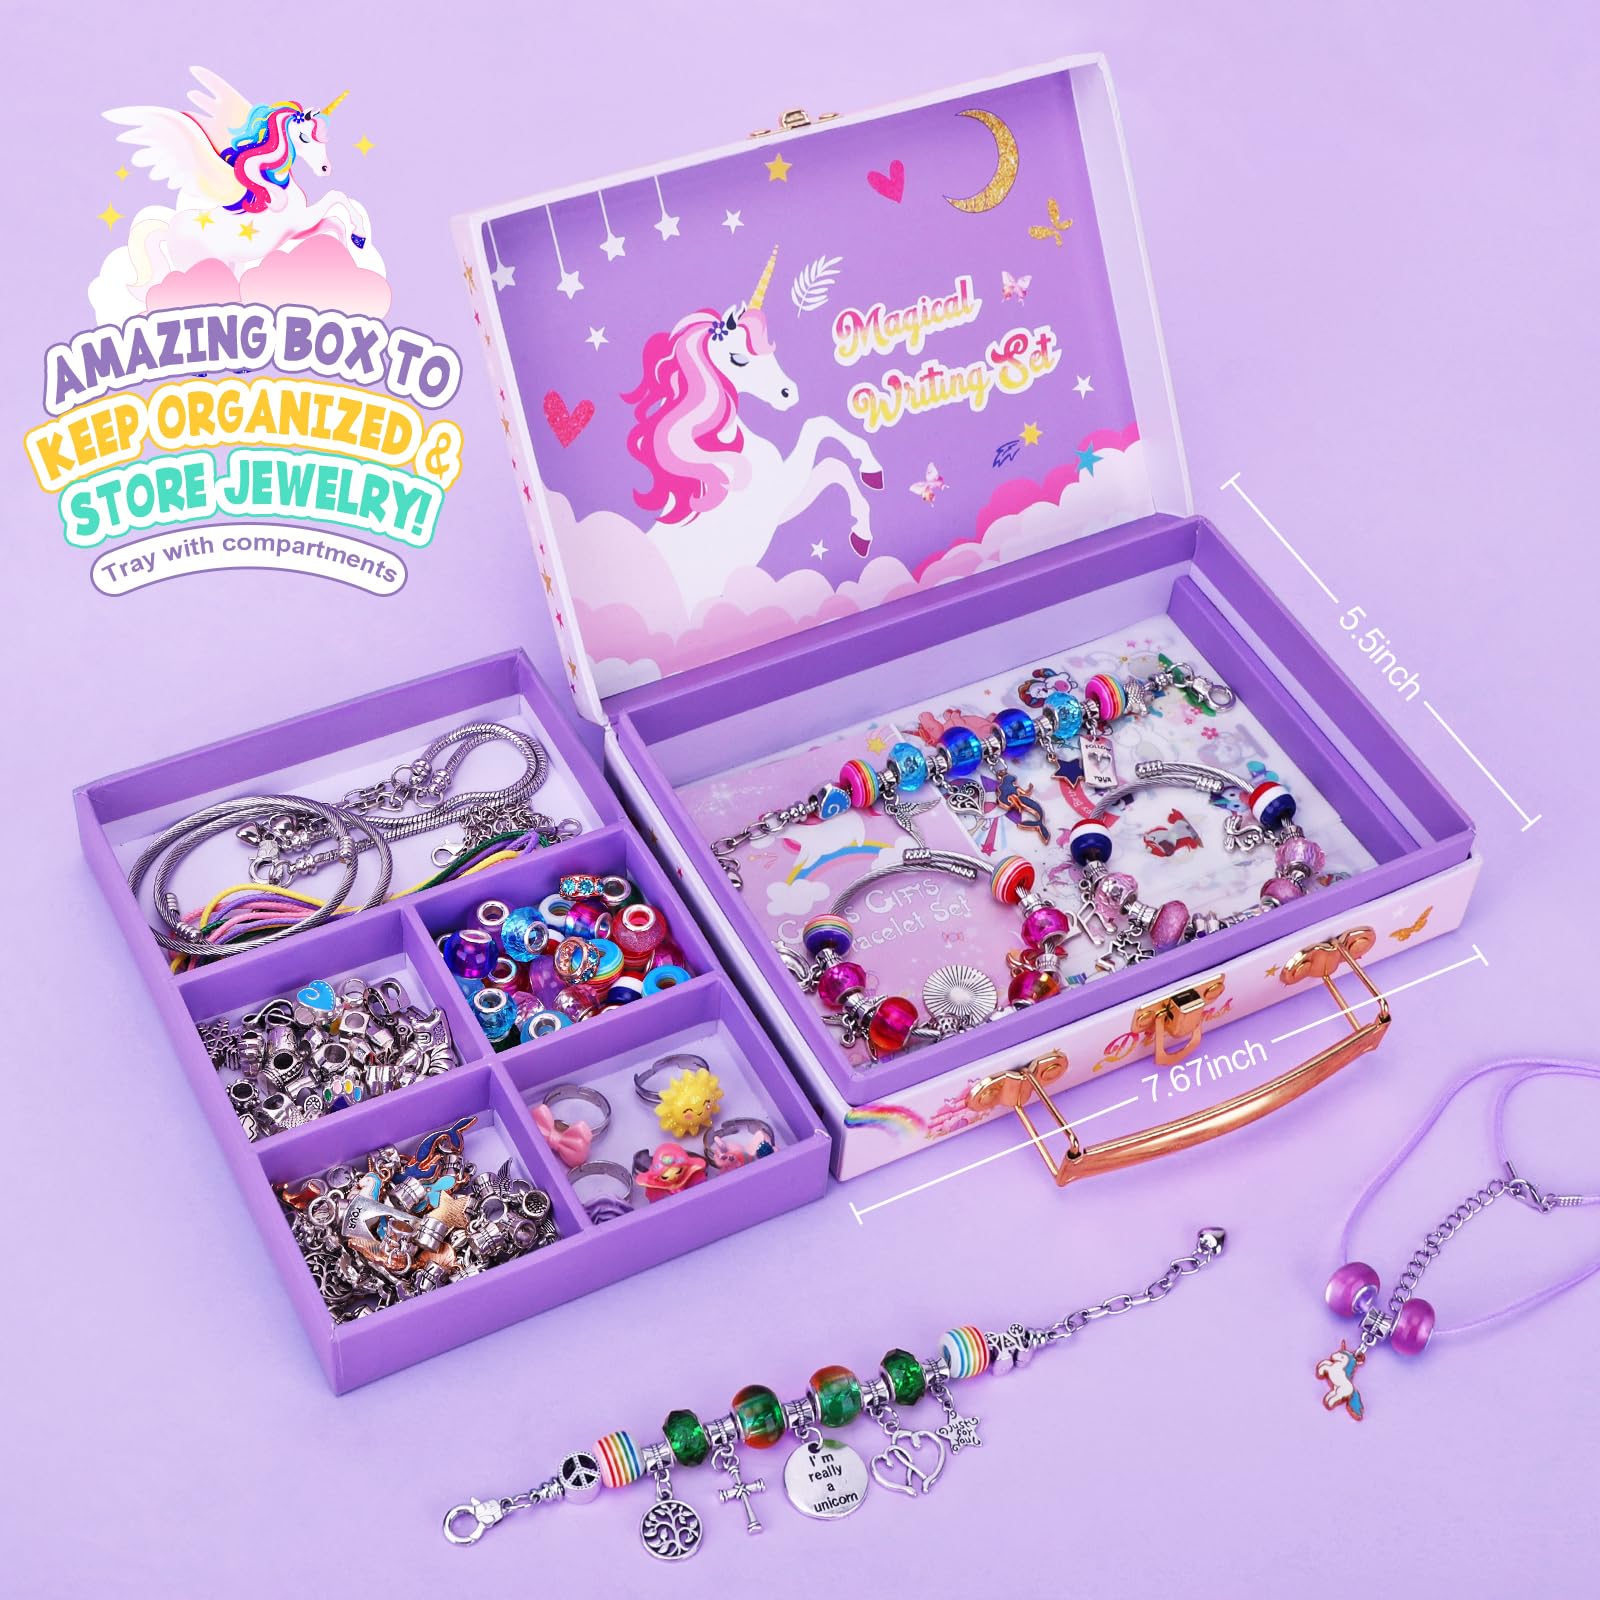 Unicorn Jewelry Making Kit